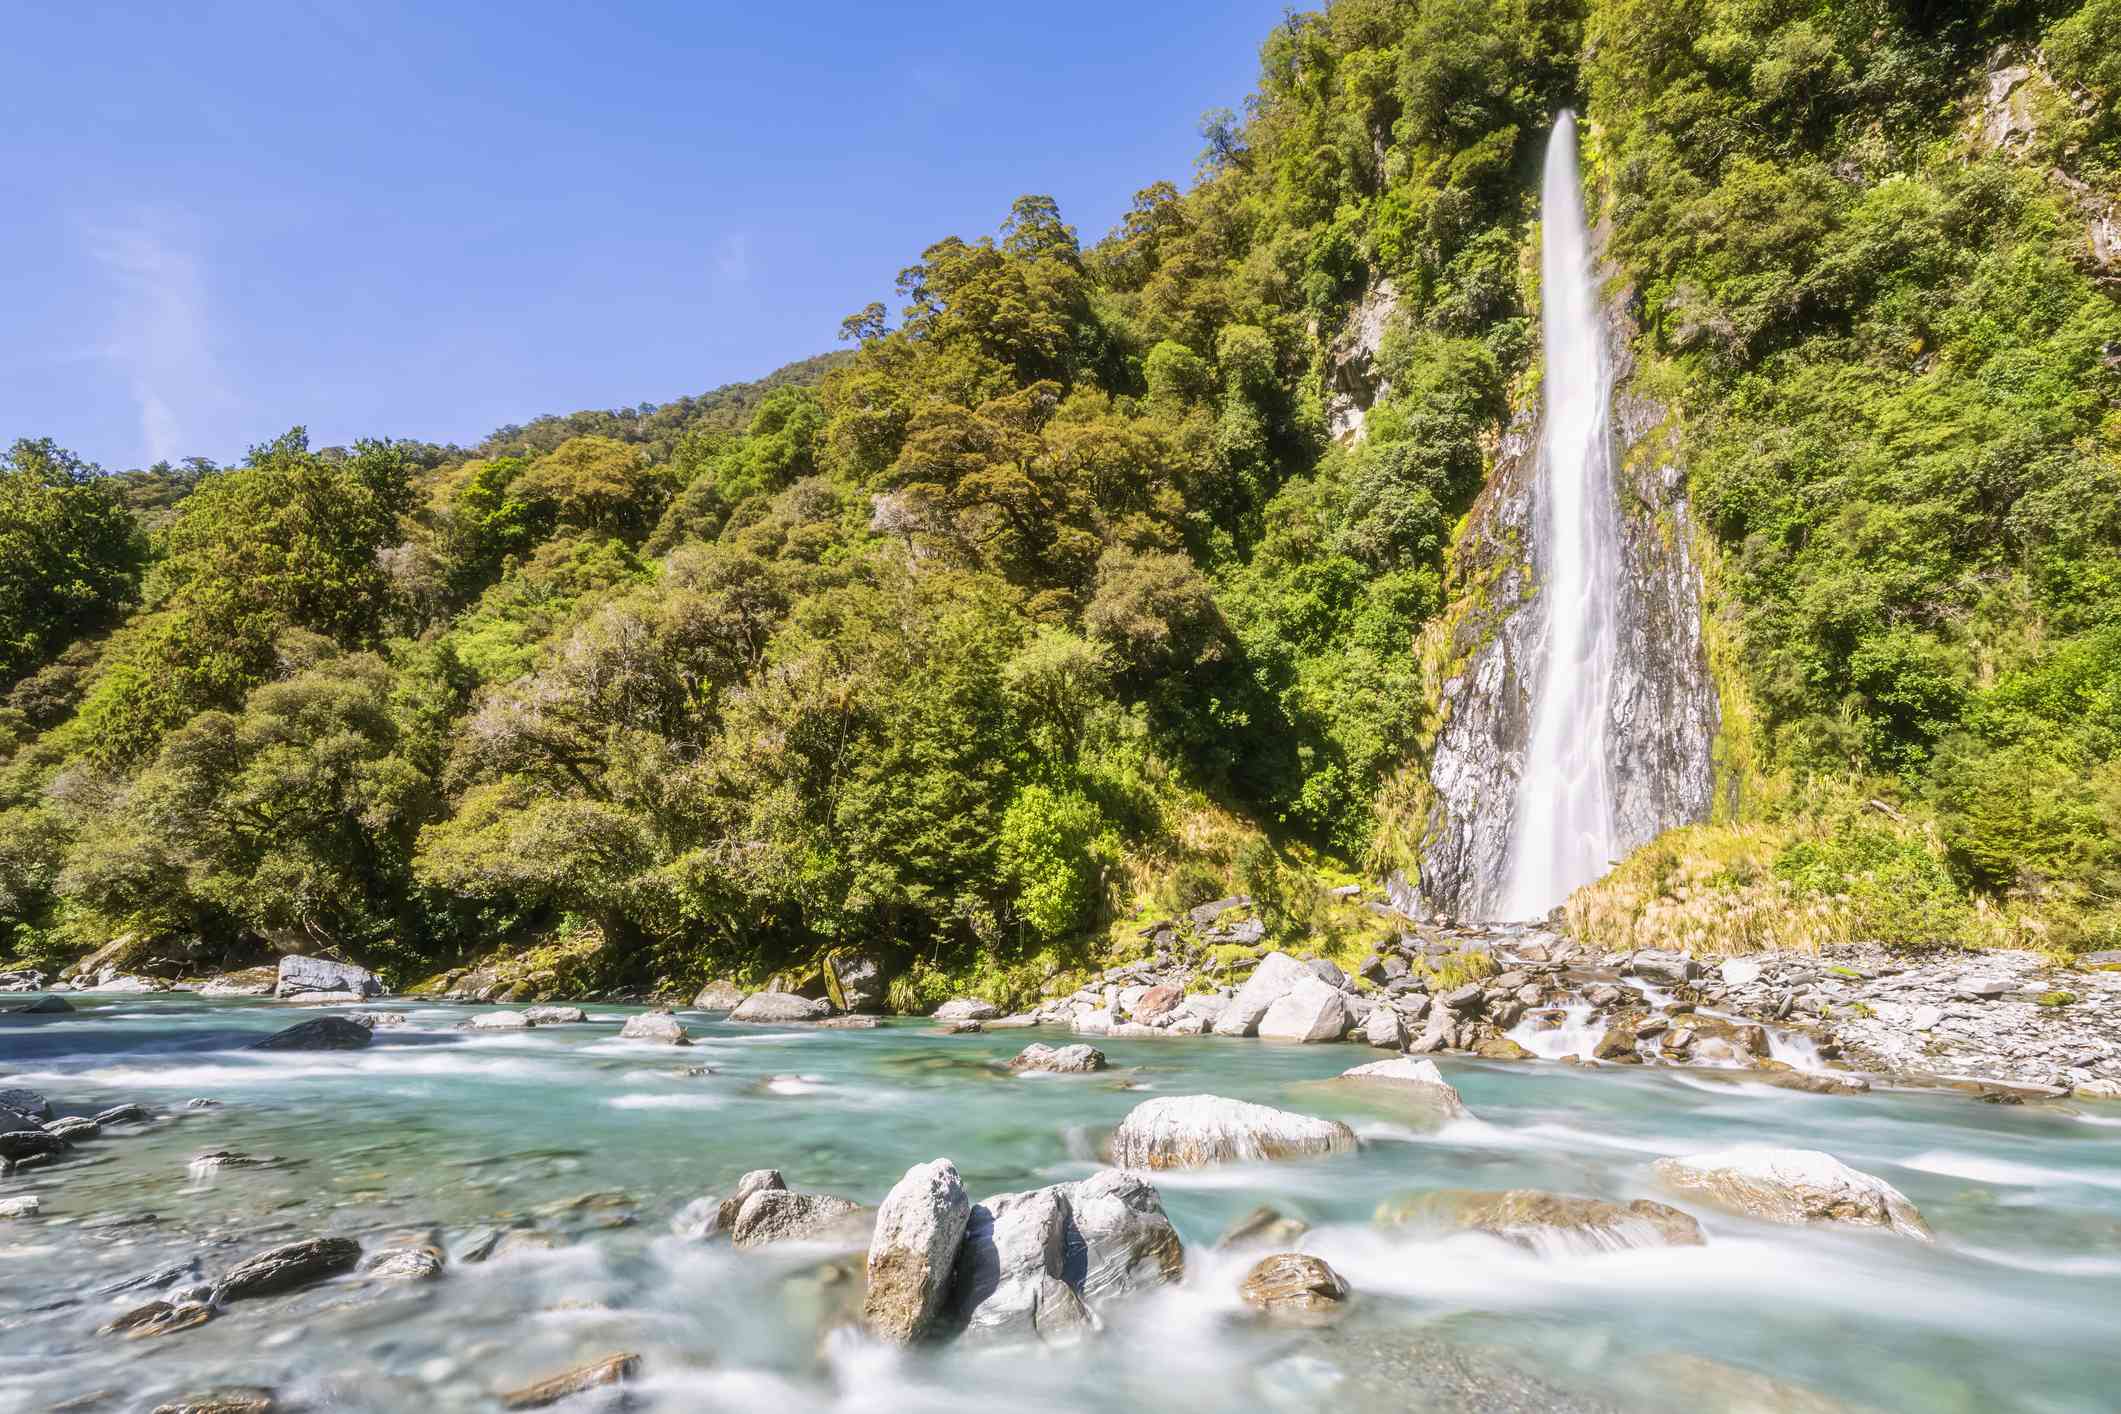 La cascada de Thunder Creek Falls vierte agua desde una montaña cubierta de árboles a un estanque de agua verde lleno de formaciones rocosas